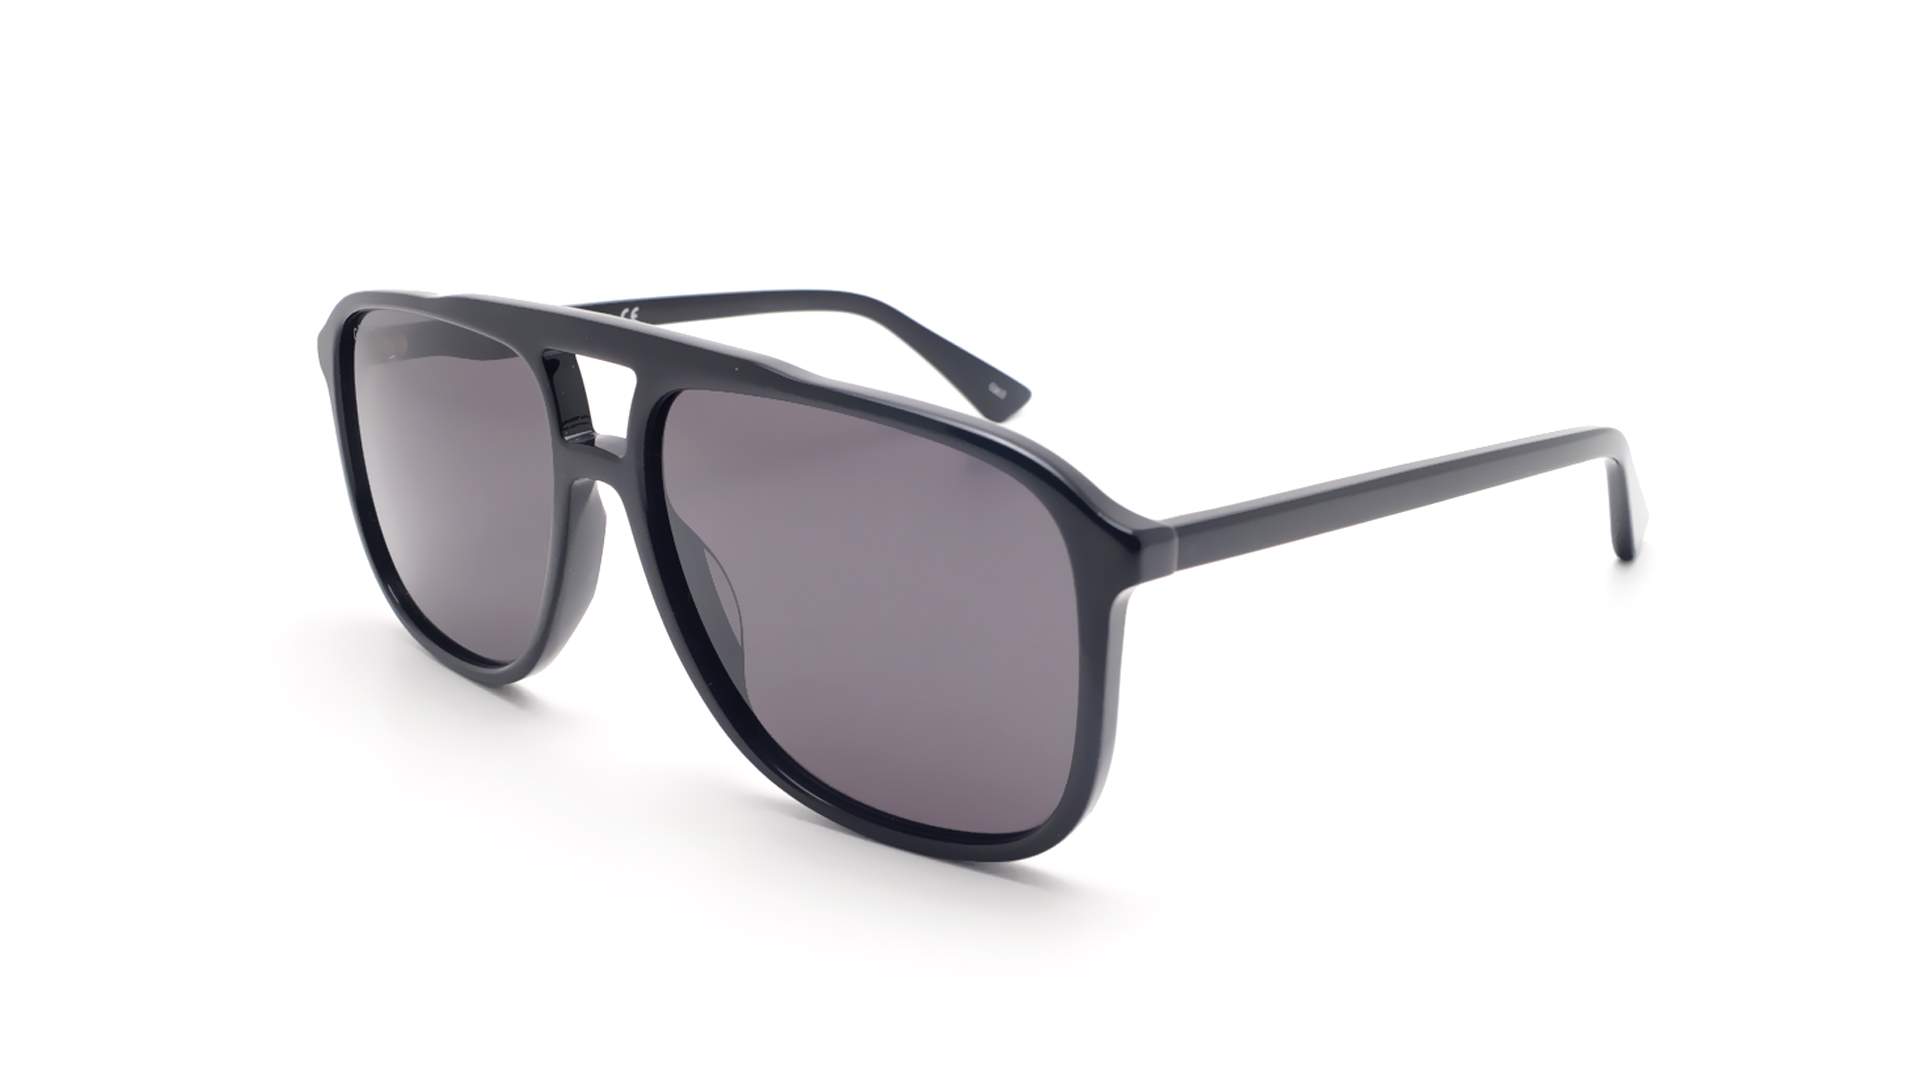 gucci sunglasses gg0262s